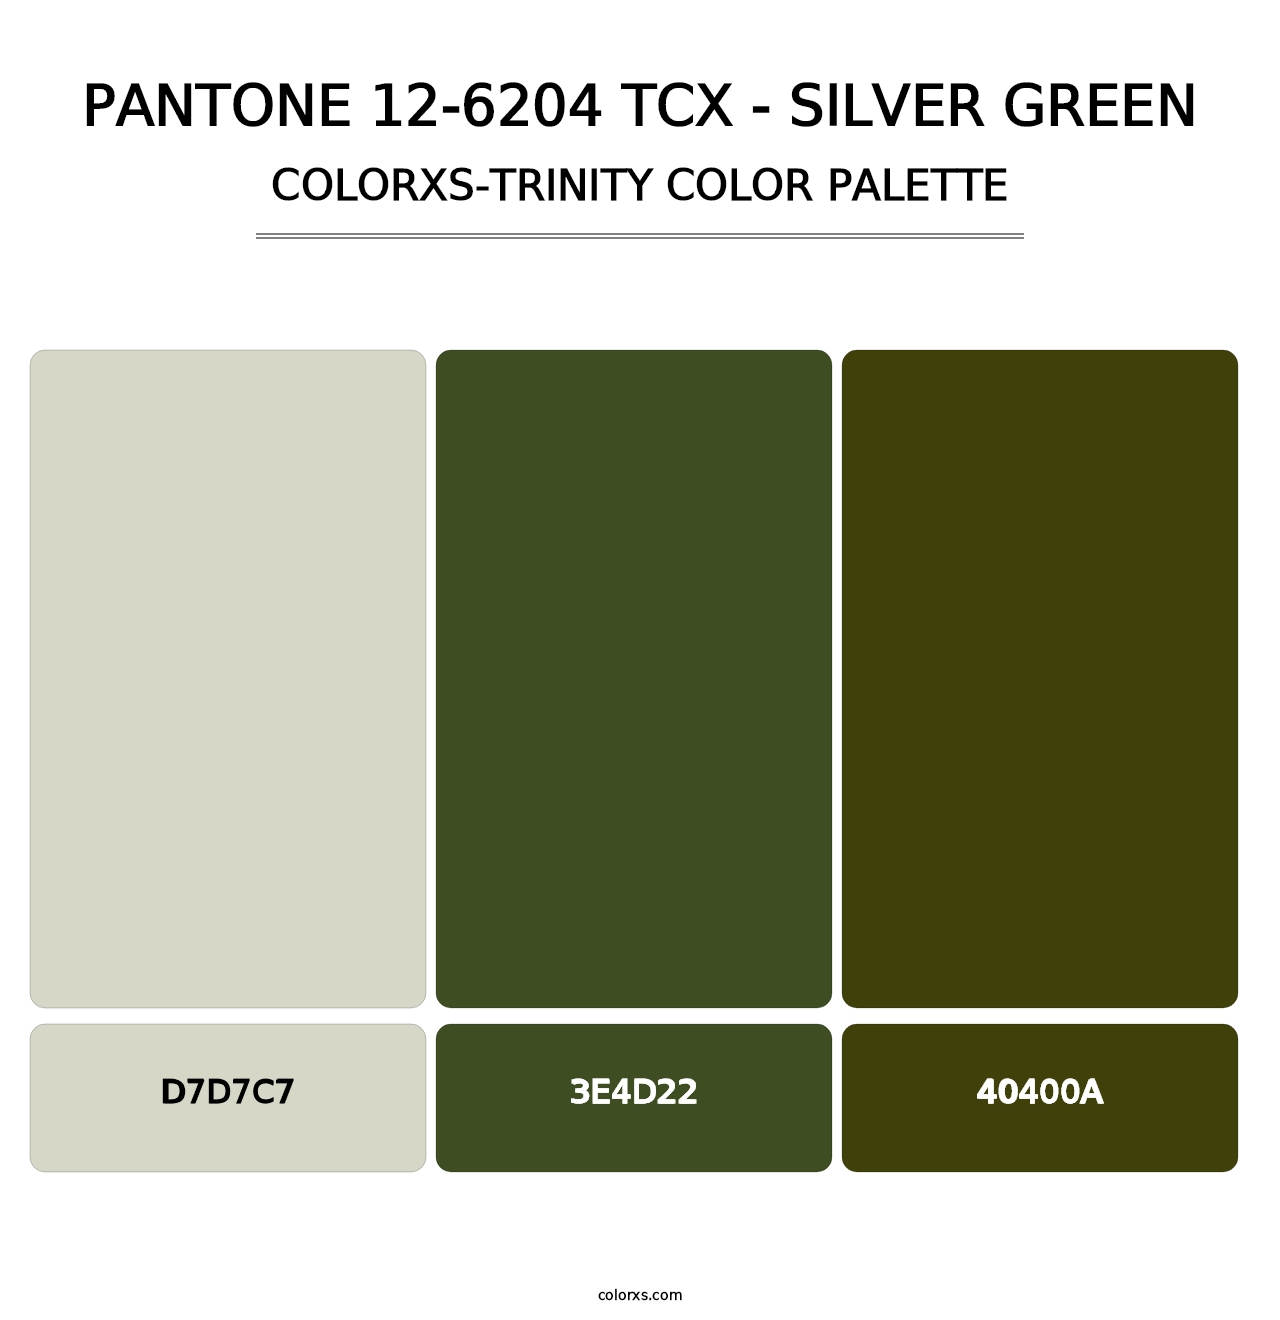 PANTONE 12-6204 TCX - Silver Green - Colorxs Trinity Palette